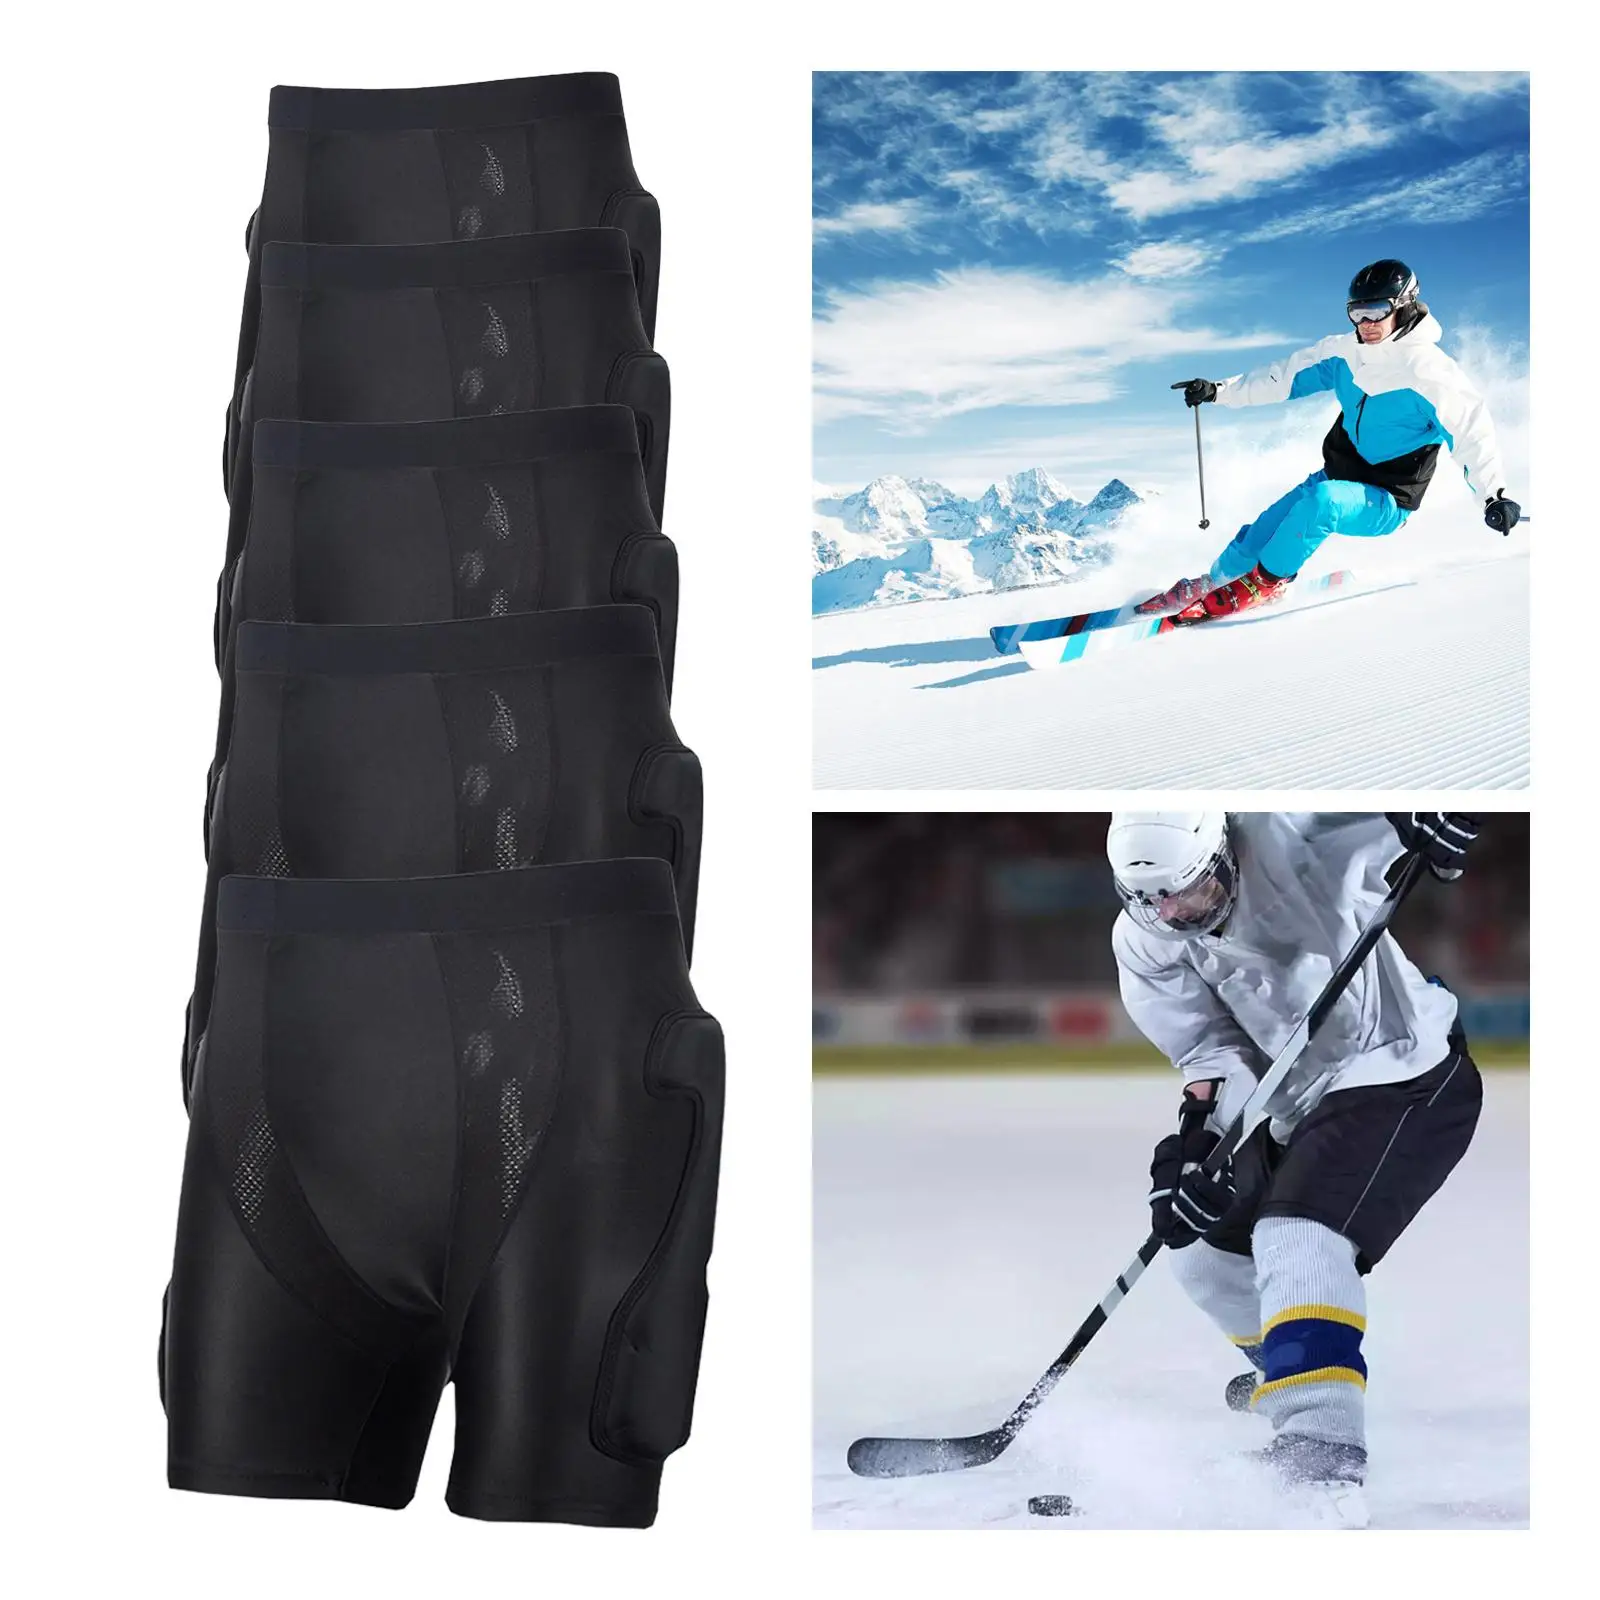 Protective Padded Shorts Skating Ski Hip Pad Protective Gear Pad Pants for Skate Riding Winter Sports Skiing Adults Teens